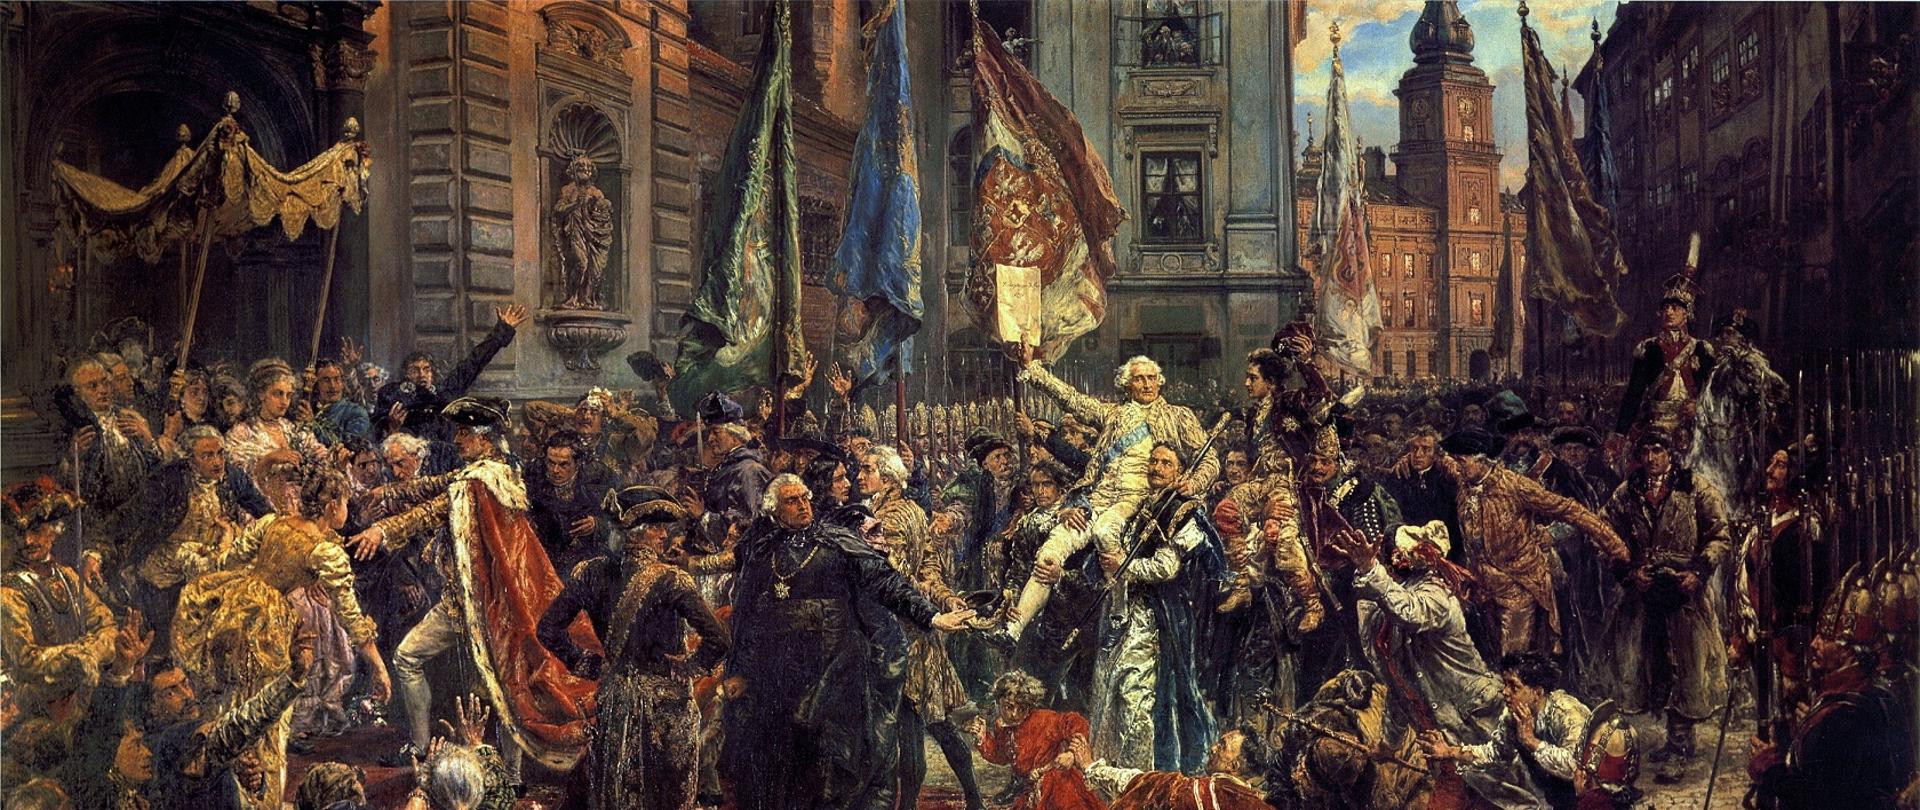 Twórcy konstytucji, czerpiąc inspirację z myśli politycznej i filozofii europejskiego oświecenia oraz amerykańskiej konstytucji uchwalonej w 1787 roku, uważali, że władza ma służyć dobru całego narodu, a nie jedynie interesom warstw uprzywilejowanych. Konstytucja miała zapoczątkować wprowadzanie kolejnych reform zmierzających do wzmocnienia państwa. Podjęte działania w obronie zagrożonej przez sąsiadów Polski stanowią dzisiaj przykład odpowiedzialności świadomych przedstawicieli elit społeczeństwa. Ostateczny rozbiór Polski przez Austrię, Prusy i Rosję w 1795 roku doprowadził do utraty jej niepodległości. Współtwórcy Konstytucji 3 Maja, Ignacy Potocki i Hugo Kołłątaj po latach ocenili, że była „ostatnią wolą i testamentem gasnącej Ojczyzny”.
Obchody tradycji Konstytucji 3 maja były zakazane podczas rozbiorów Polski. Po odzyskaniu niepodległości po pierwszej wojnie światowej, rocznica Konstytucji 3 maja została uznana za święto narodowe w 1919 roku. Podczas okupacji niemieckiej i sowieckiej święto Konstytucji 3 Maja było zakazane. Po drugiej wojnie światowej komunistyczne władze w Warszawie zmierzały do likwidacji trzeciomajowych obchodów ze względu na odwoływanie się do tradycji niepodległości Polski oraz ich narodowo-katolicki charakter. Przeciwstawiano im i nagłaśniano propagandowo Święto Pracy. Przez wiele lat nie odbywały się państwowe uroczystości związane z rocznicą Konstytucji 3 maja, a wszelkie próby uczczenia święta kończyły się zazwyczaj zatrzymaniami i szykanami. W 1990 roku, po upadku komunizmu i odzyskaniu suwerenności przez Polskę, powrócono do przedwojennej tradycji i ponownie proklamowano dzień 3 maja świętem narodowym.
Biuro Rzecznika Prasowego
Ministerstwo Spraw Zagranicznych
Konstytucja 3 Maja – obraz Jana Matejki (1838–1893)
Konstytucja 3 Maja. Jan Matejko
